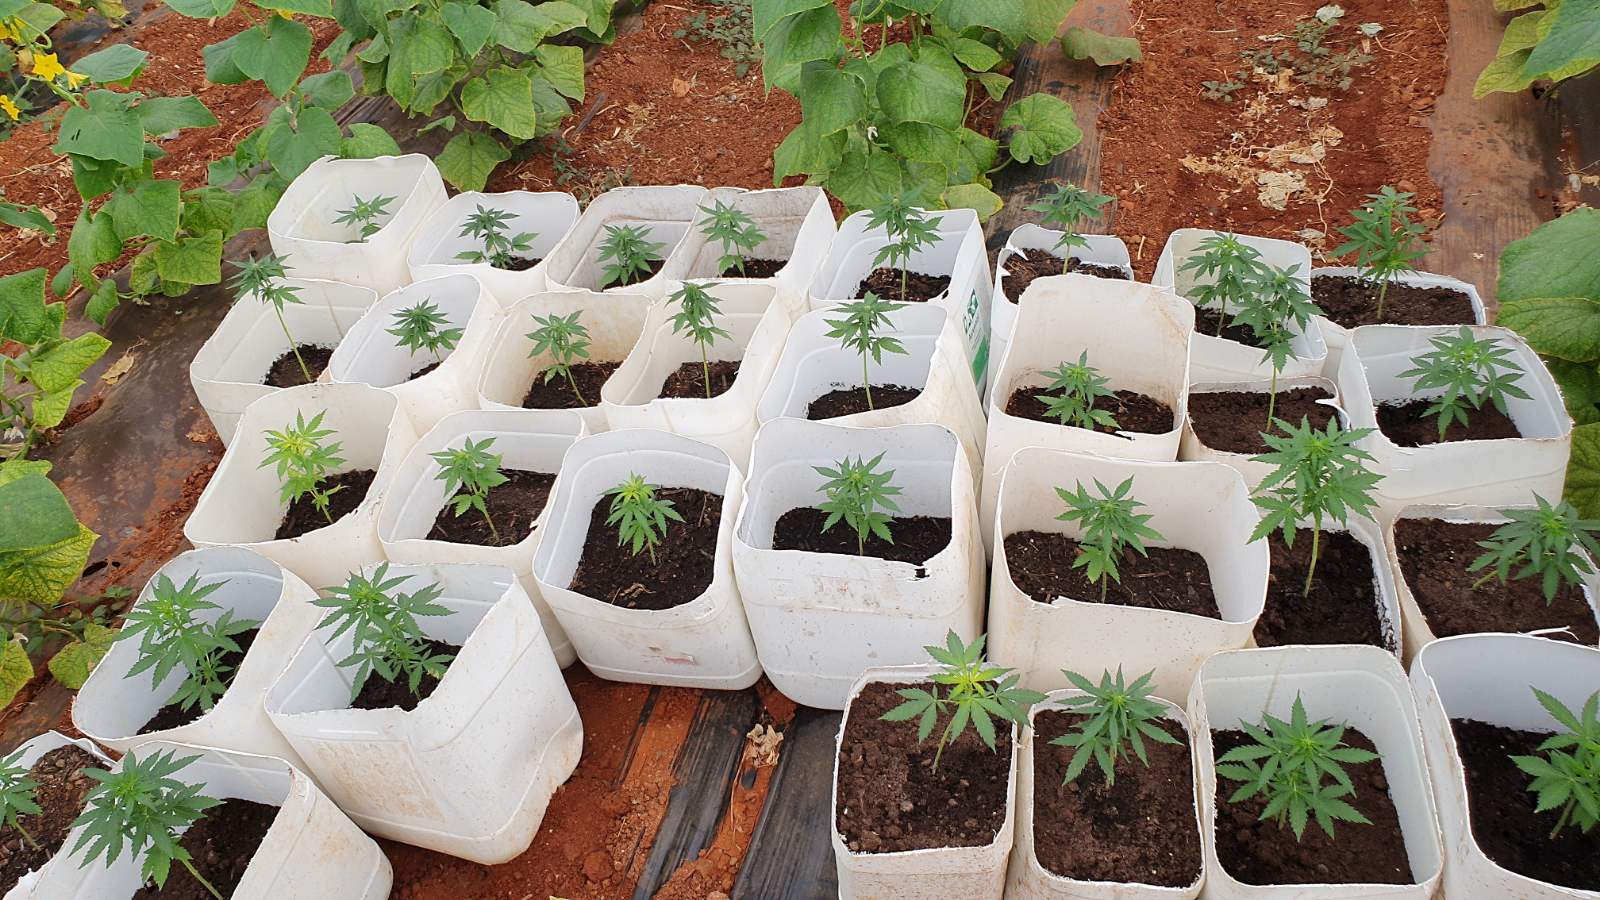 “Μεγαλοτσιφλικάς’’ στην Κρήτη καλλιεργούσε 3.250 δενδρύλλια κάνναβης